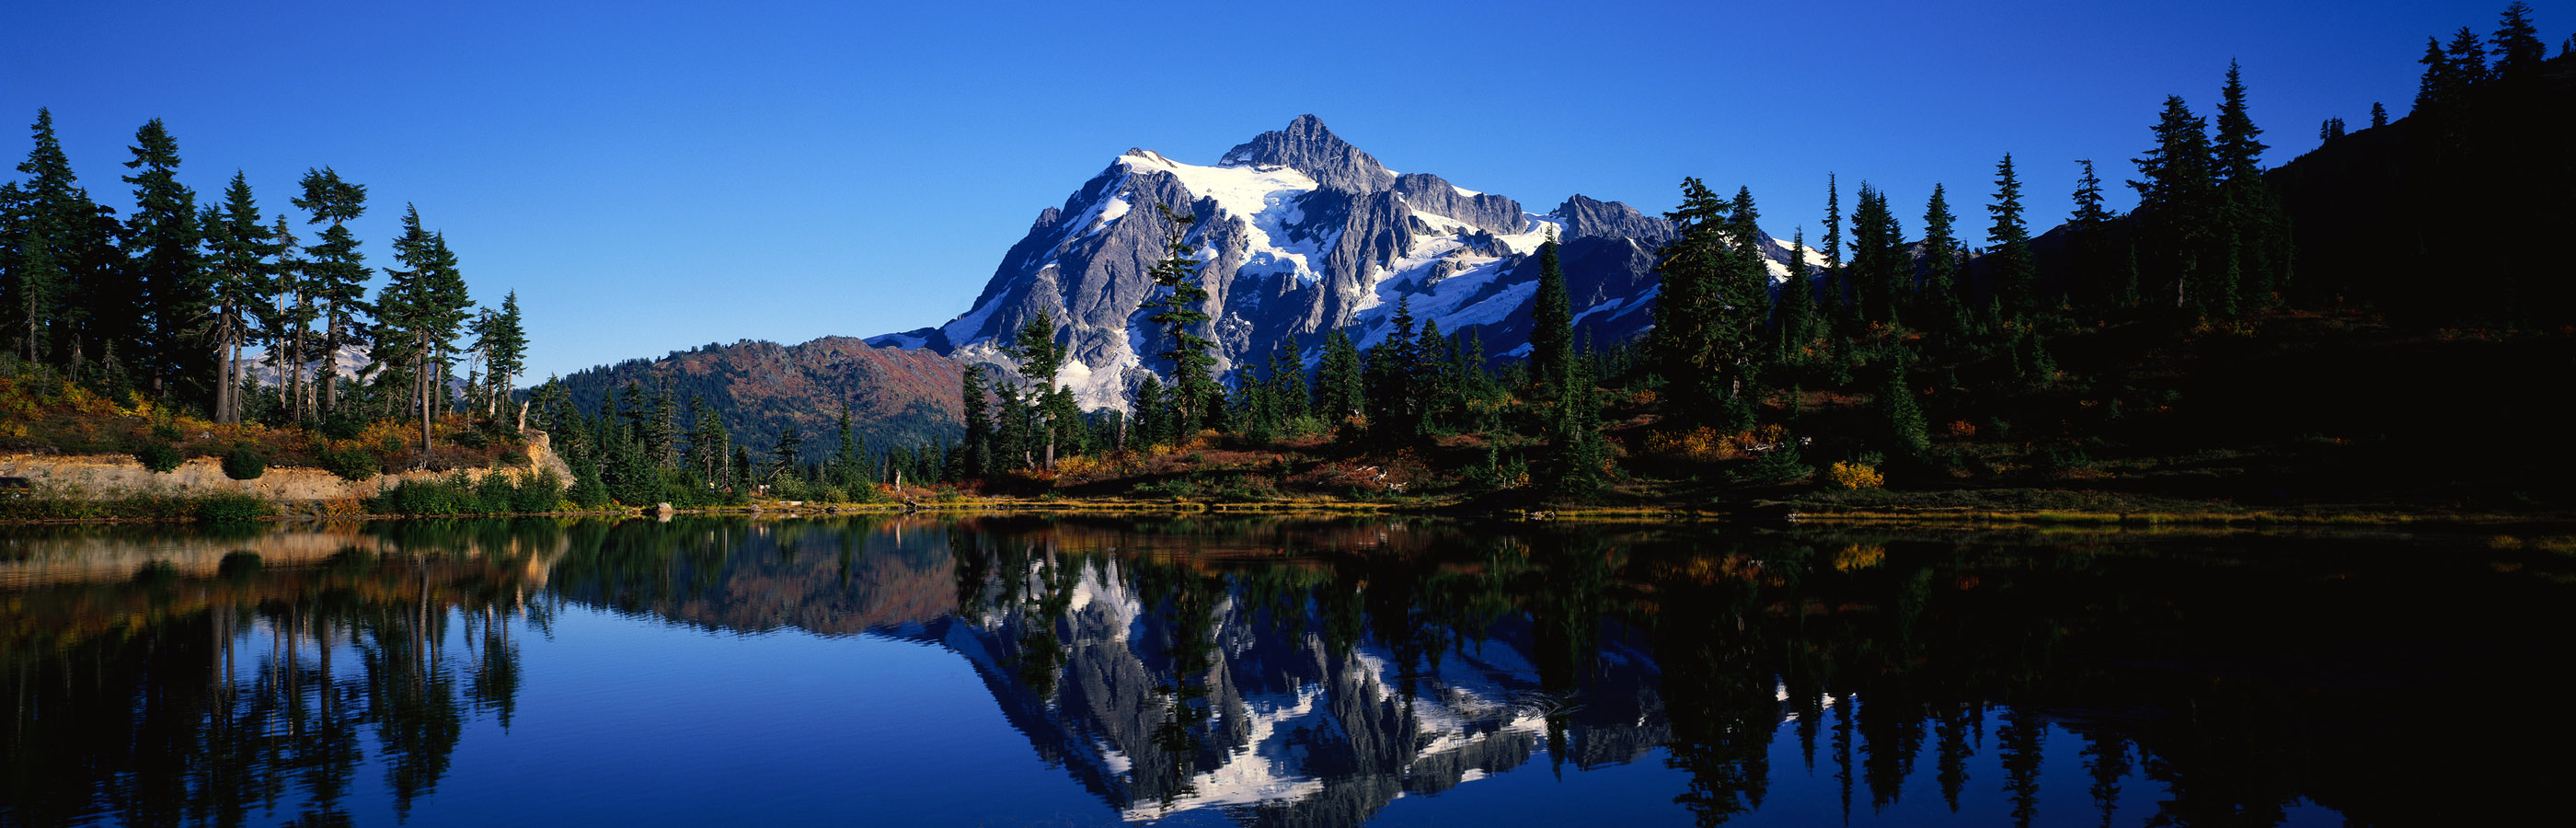 doppio monitor per desktop panoramico,montagna,riflessione,paesaggio naturale,natura,catena montuosa